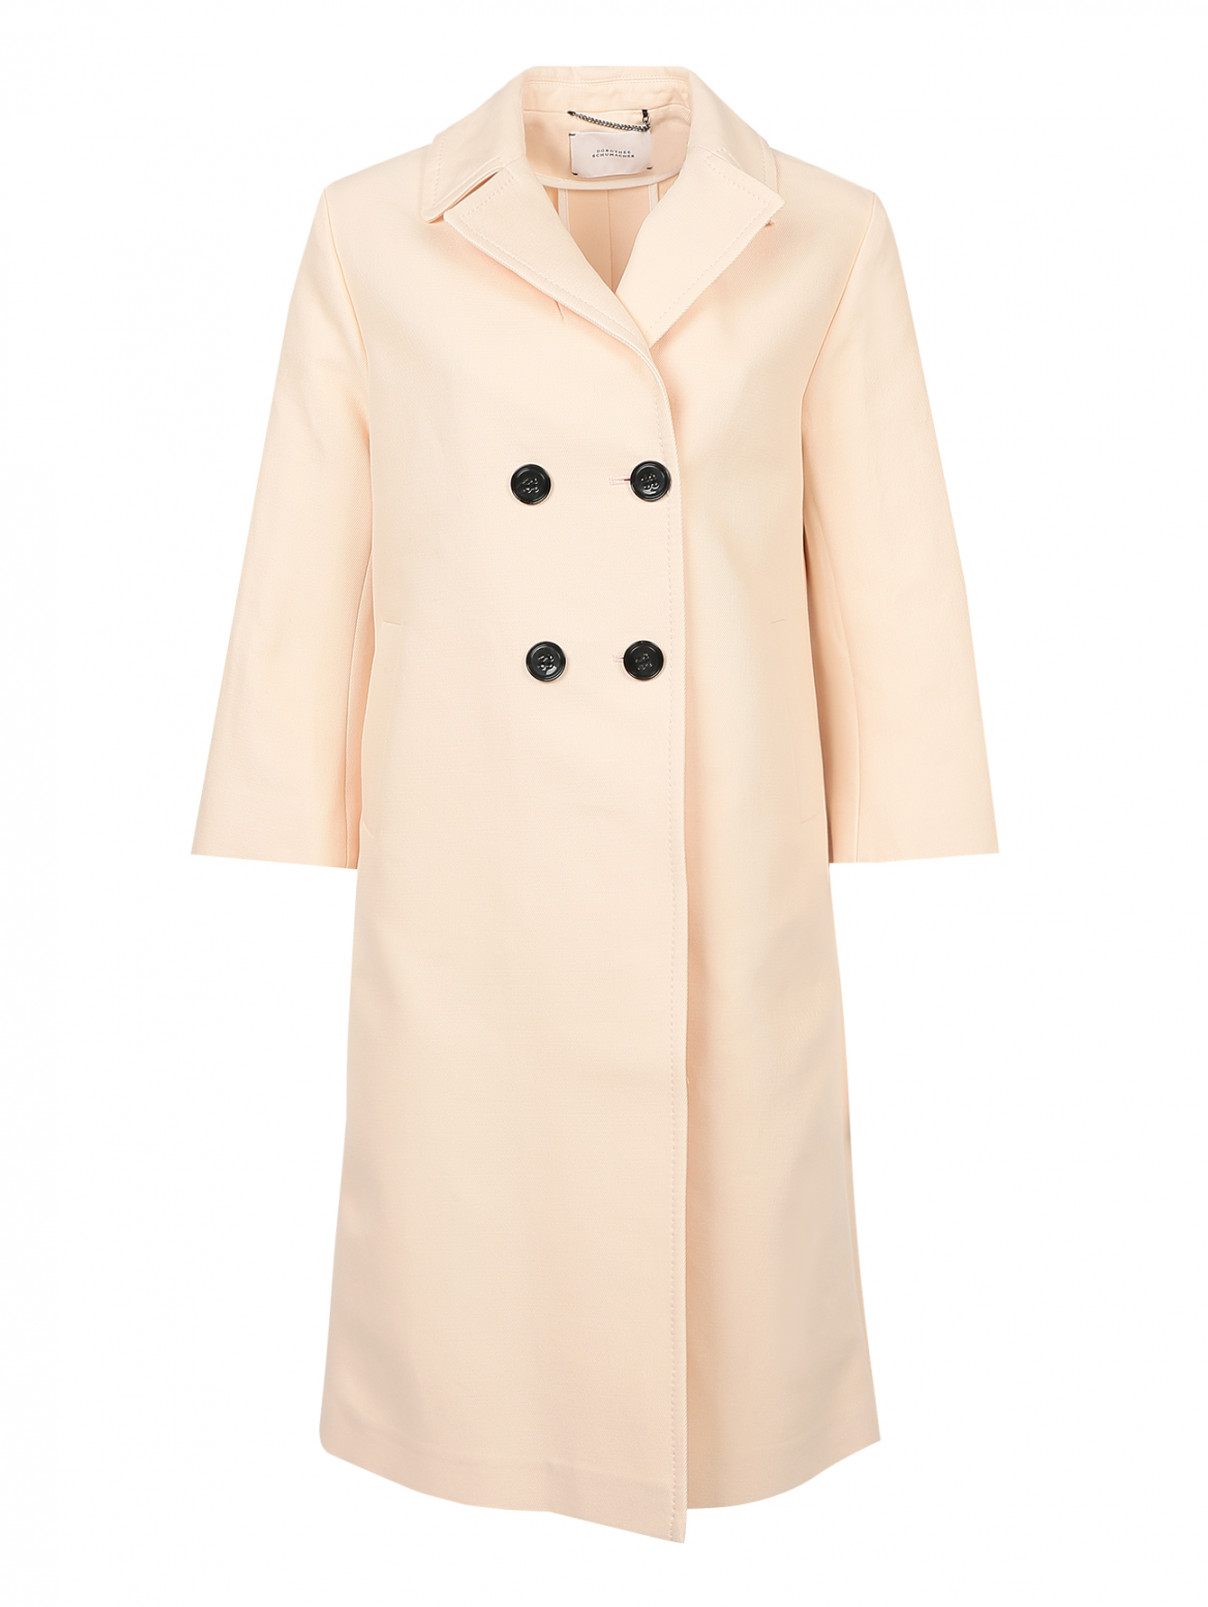 Пальто из хлопка на пуговицах Dorothee Schumacher  –  Общий вид  – Цвет:  Розовый